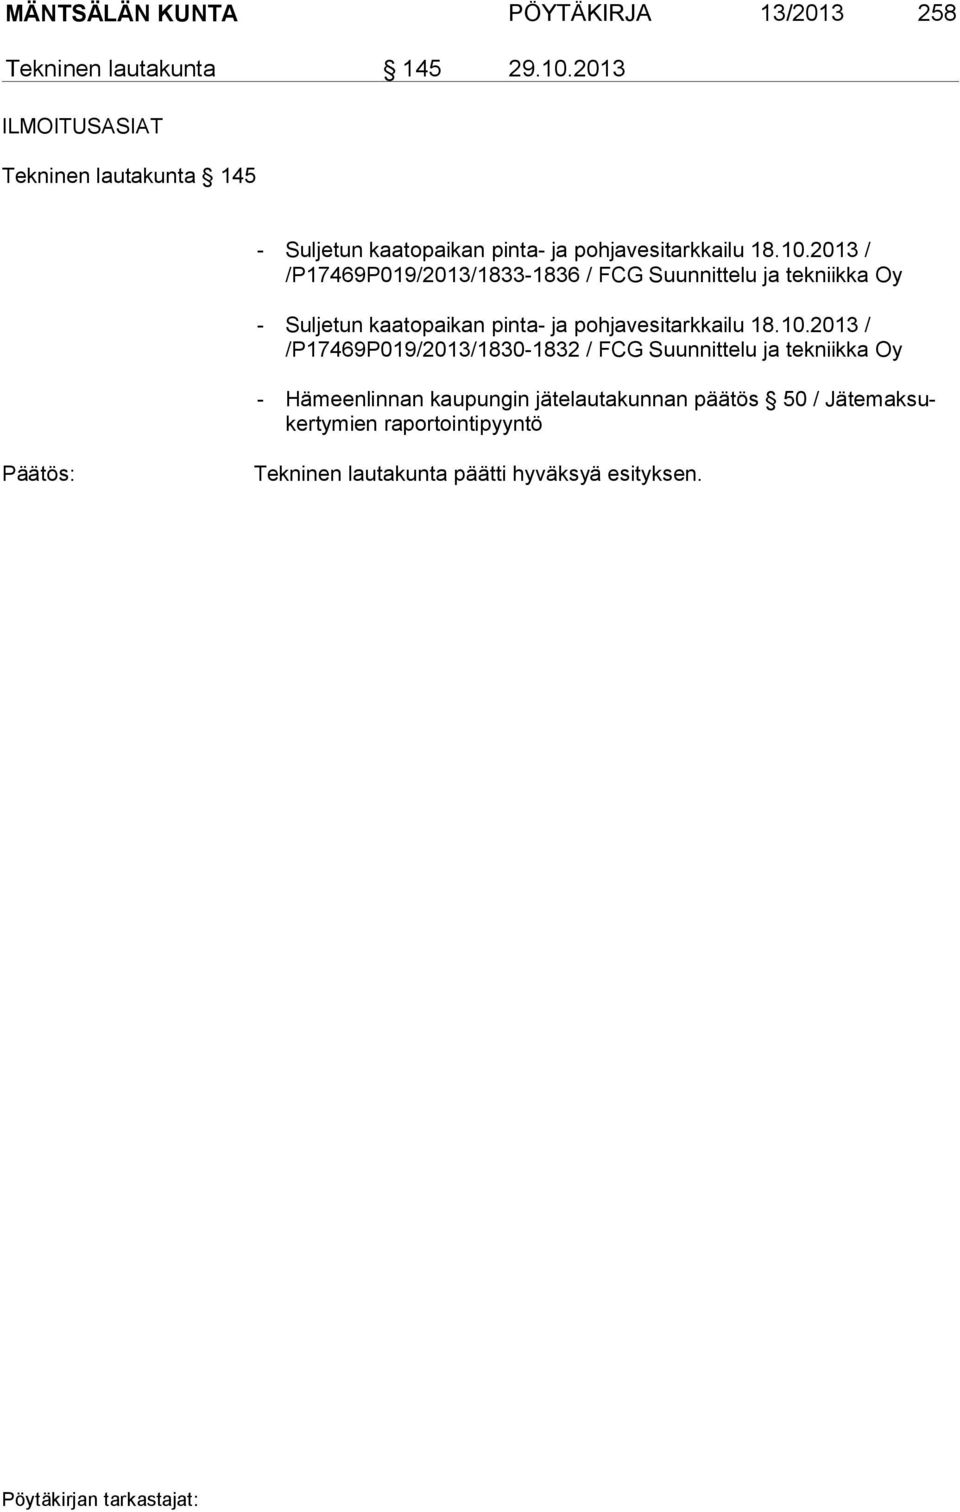 2013 / /P17469P019/2013/1833-1836 / FCG Suunnittelu ja tekniikka Oy - Suljetun kaatopaikan pinta- ja pohjavesitarkkailu 18.10.